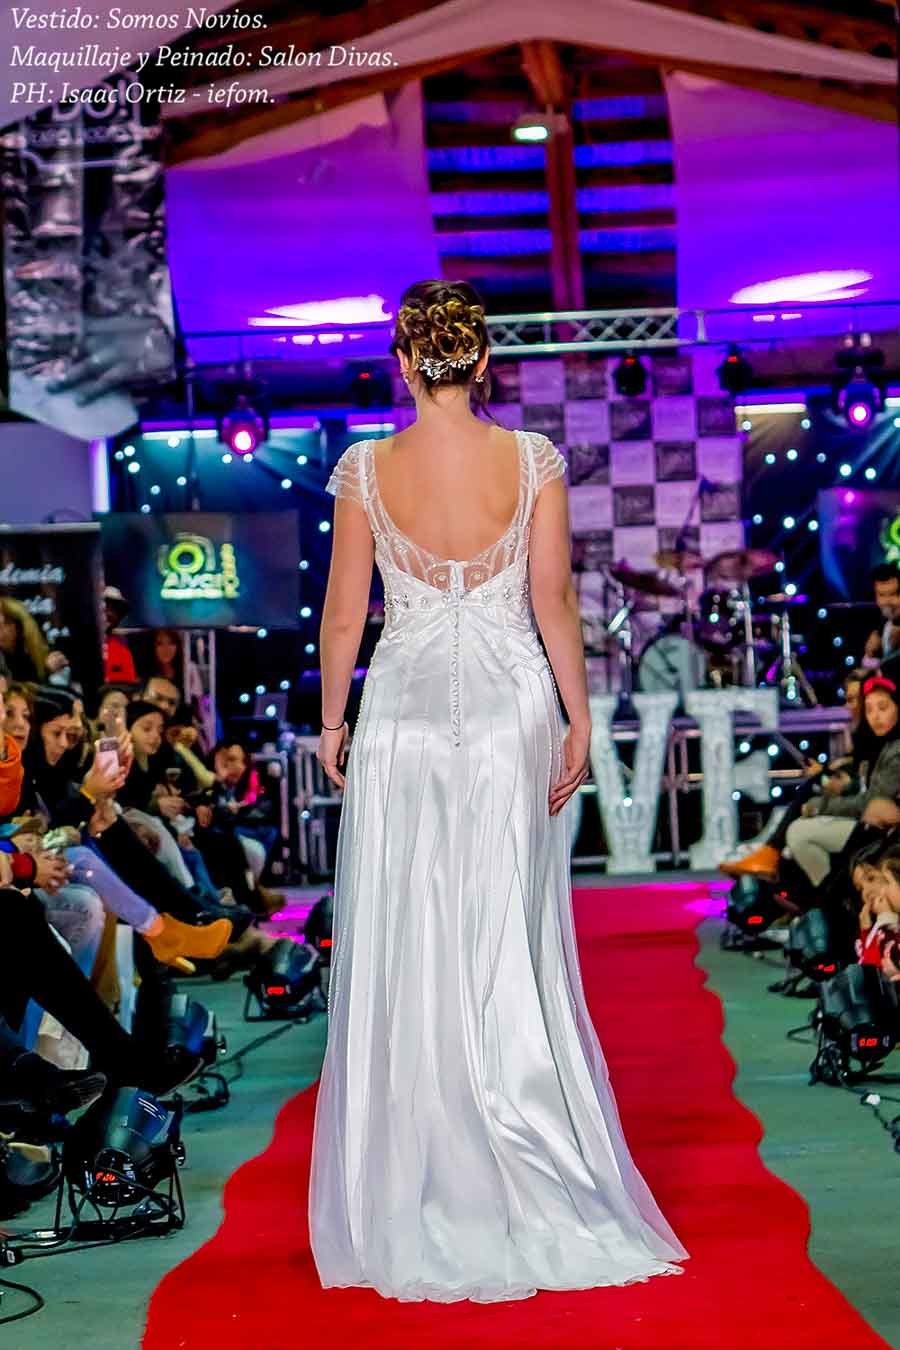 mujer joven con vestido de novia espalda abierta satin en la expo novios temuco 